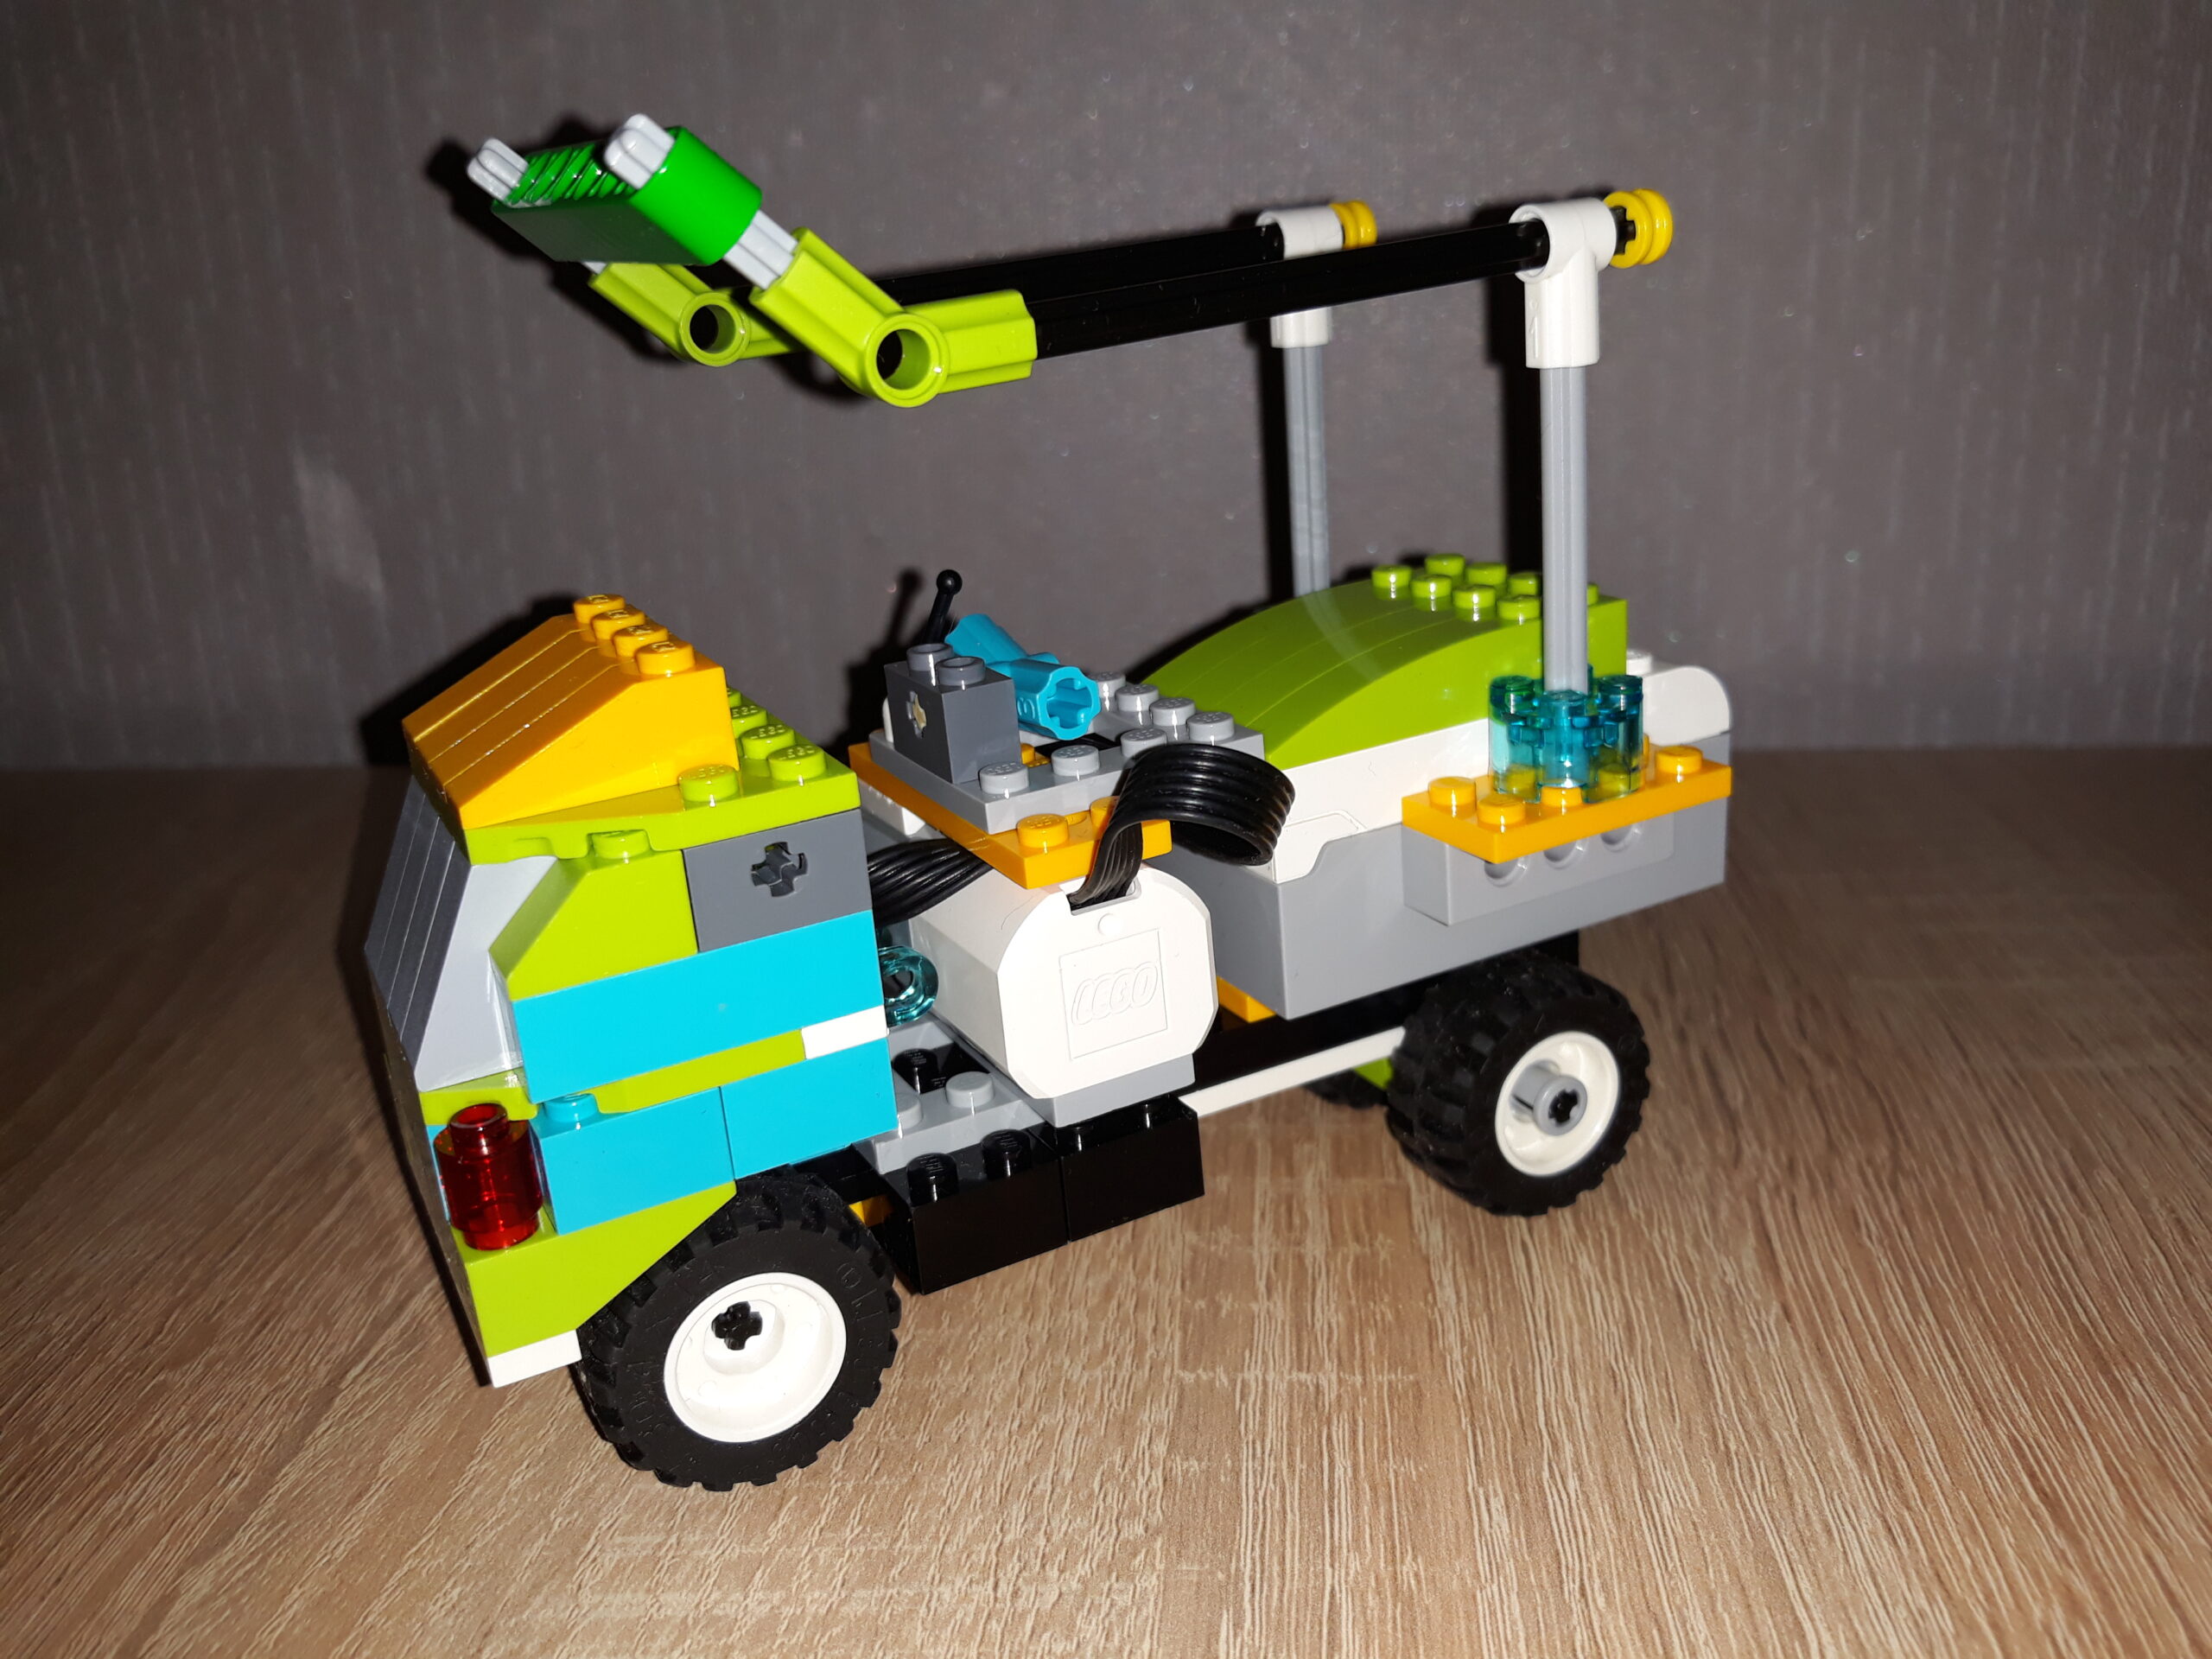 Инструкция по сборке из набора LEGO Education WeDo 2.0 Модифицированный грузовичок